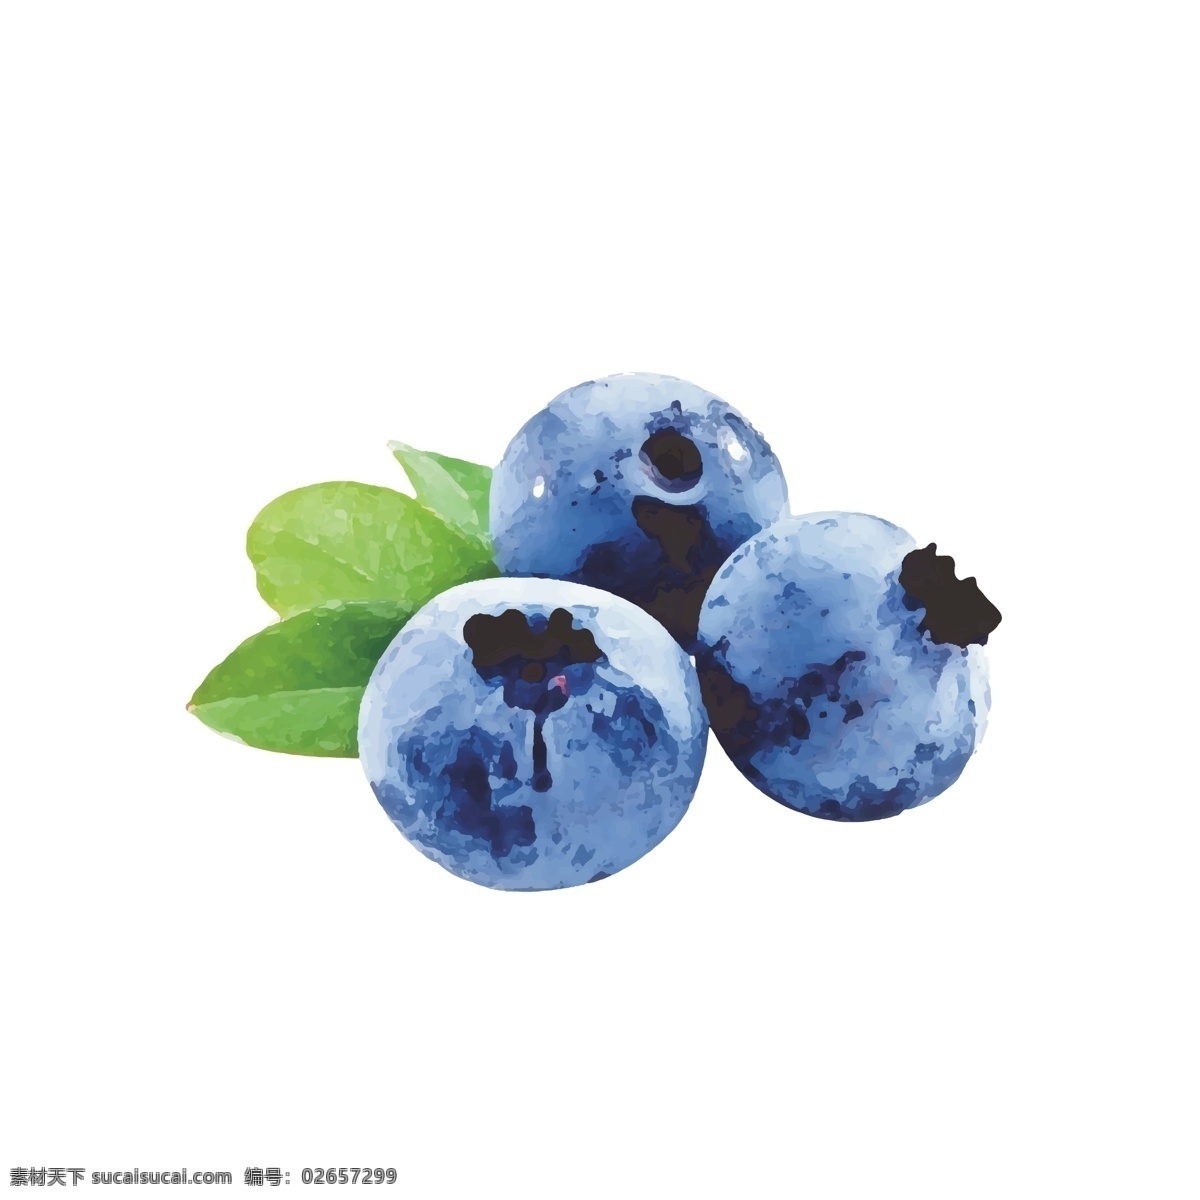 原创 蓝莓 手绘 水果 卡通 矢量 卡通水果 草莓 植物